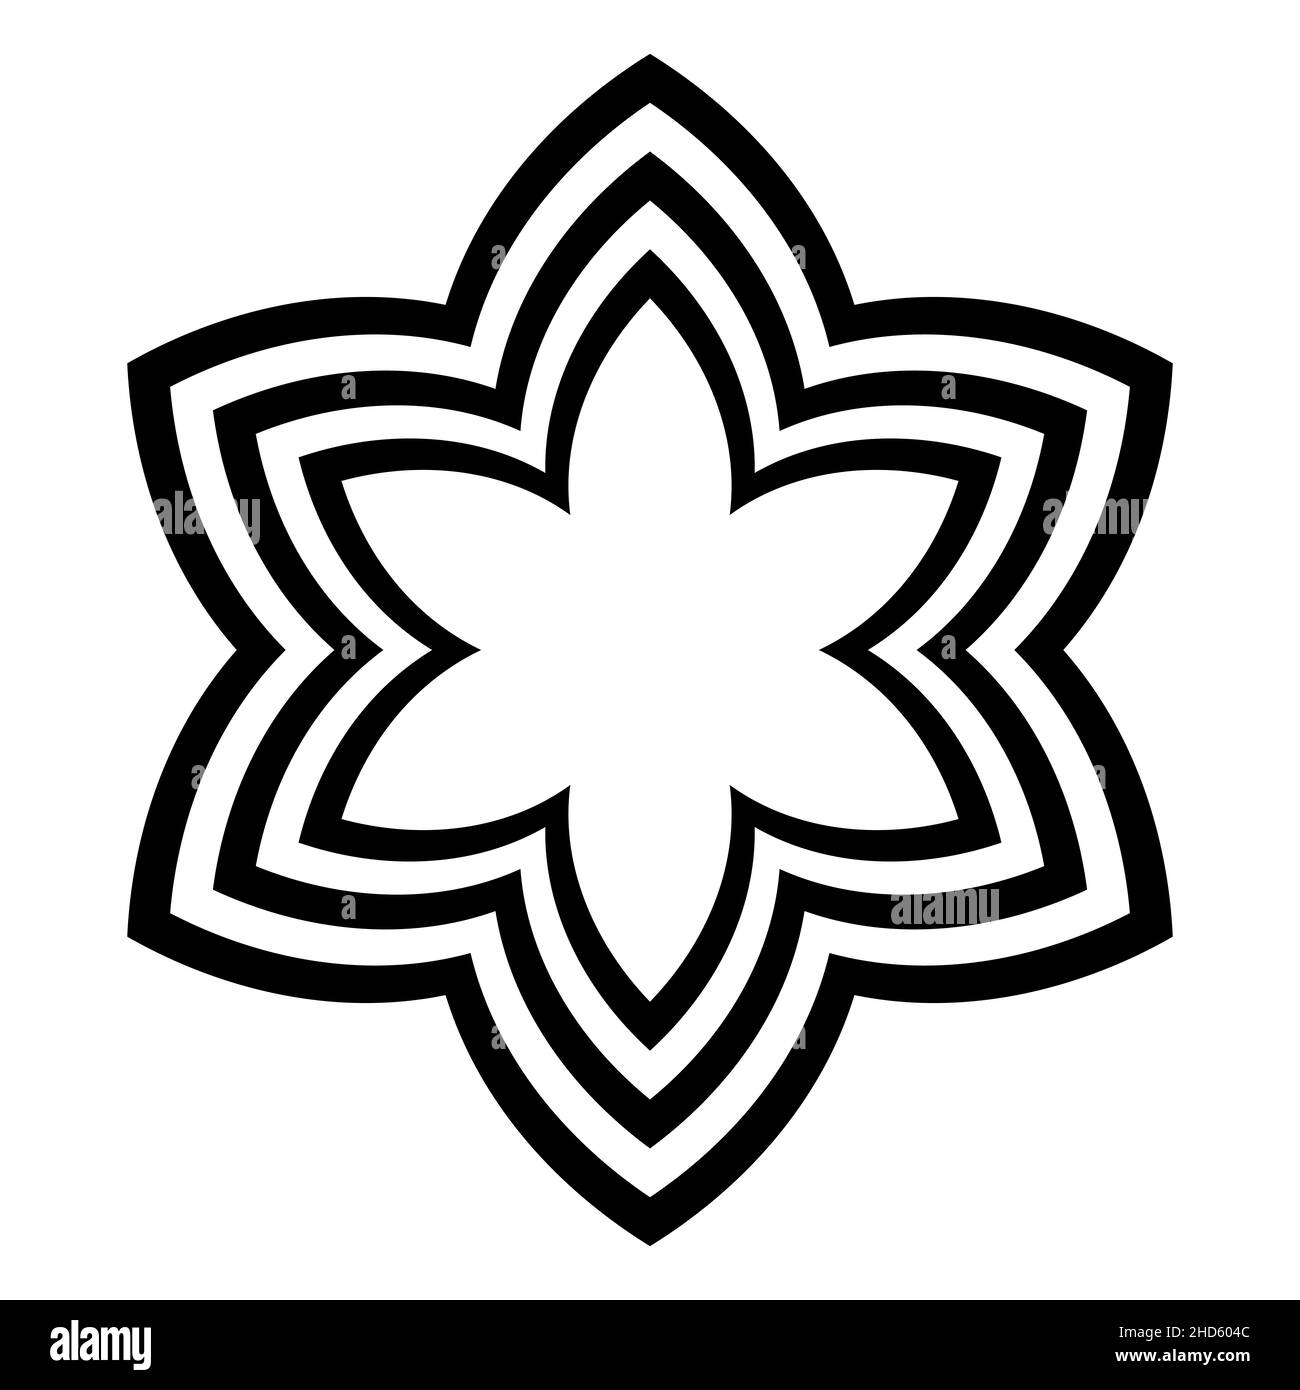 Sechszackige Sternsymbole mit gewölbten Offsetlinien. Drei kühne Linien, geschwungen wie Lanzettenbögen, bilden ein Piktogramm, in Form einer Blüte. Stockfoto